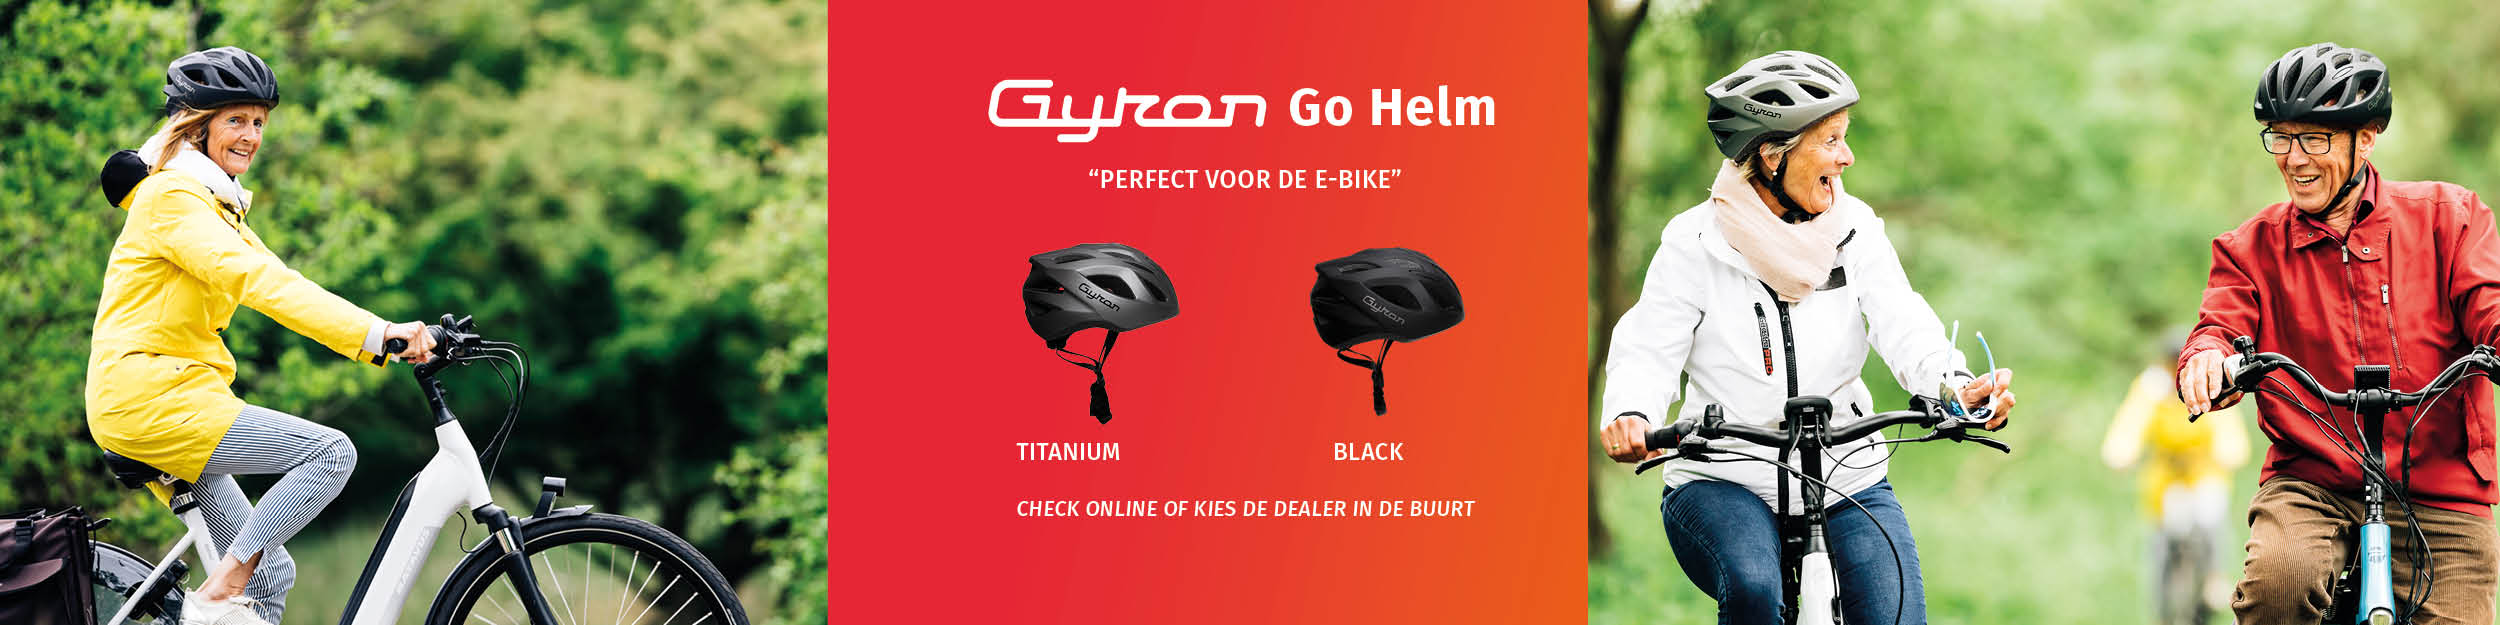 Gyron Go helm E-bike